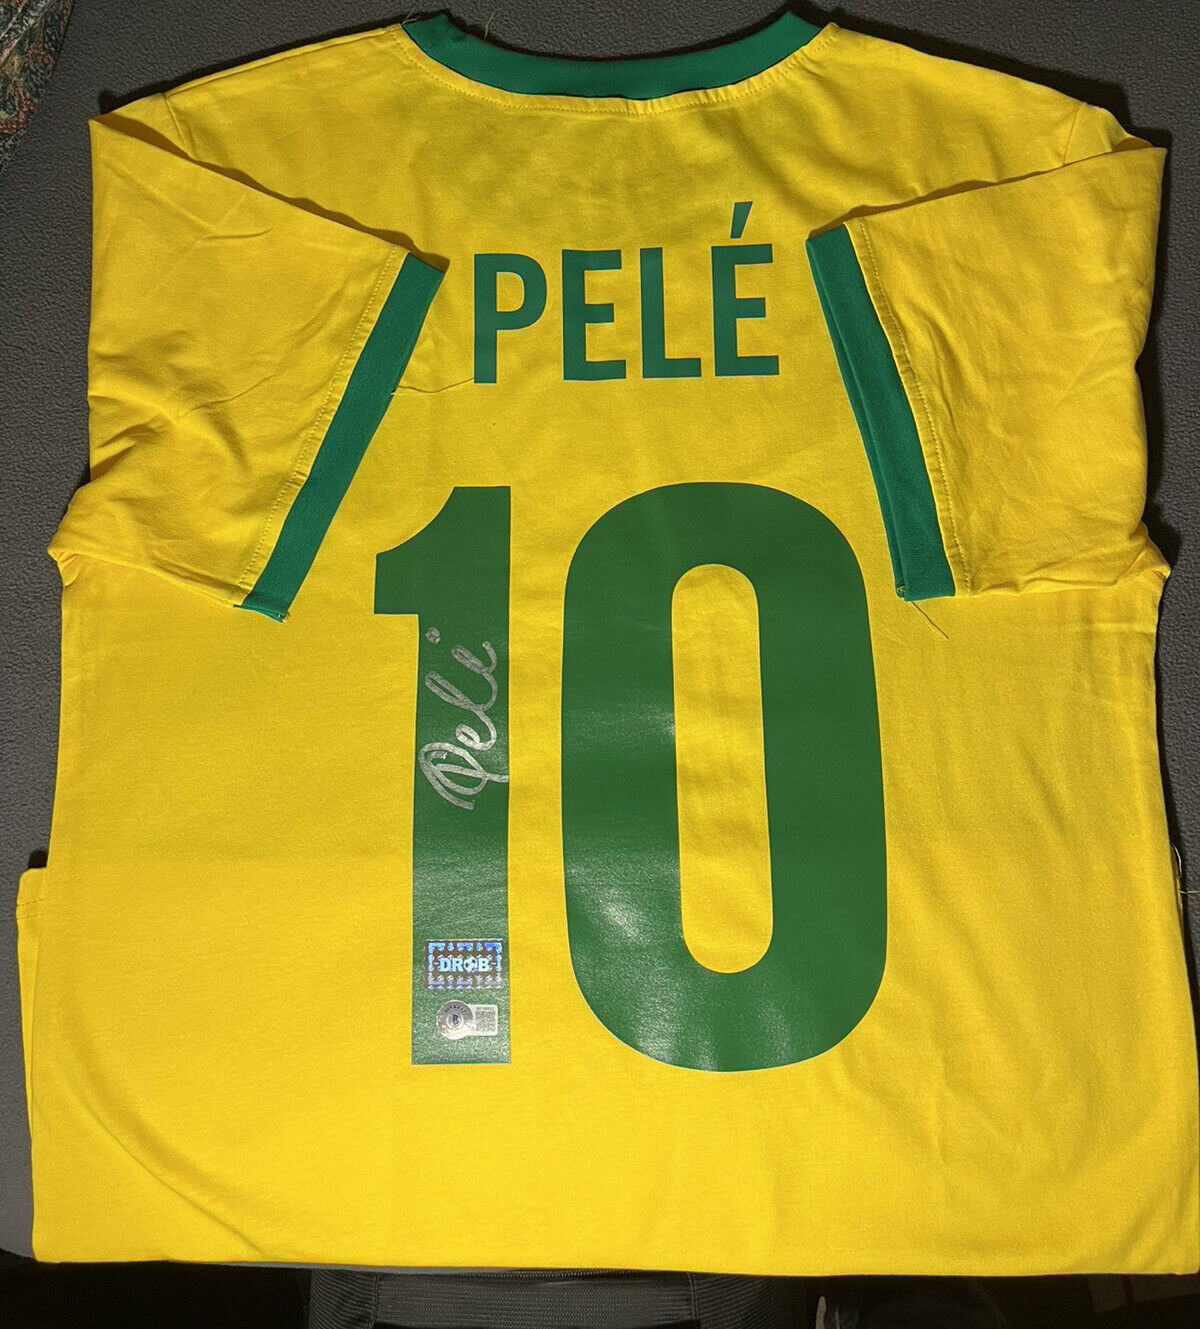 Pele Signed Brazil National Team Jersey Shirt Bas (beckett) Autographed Auto -b